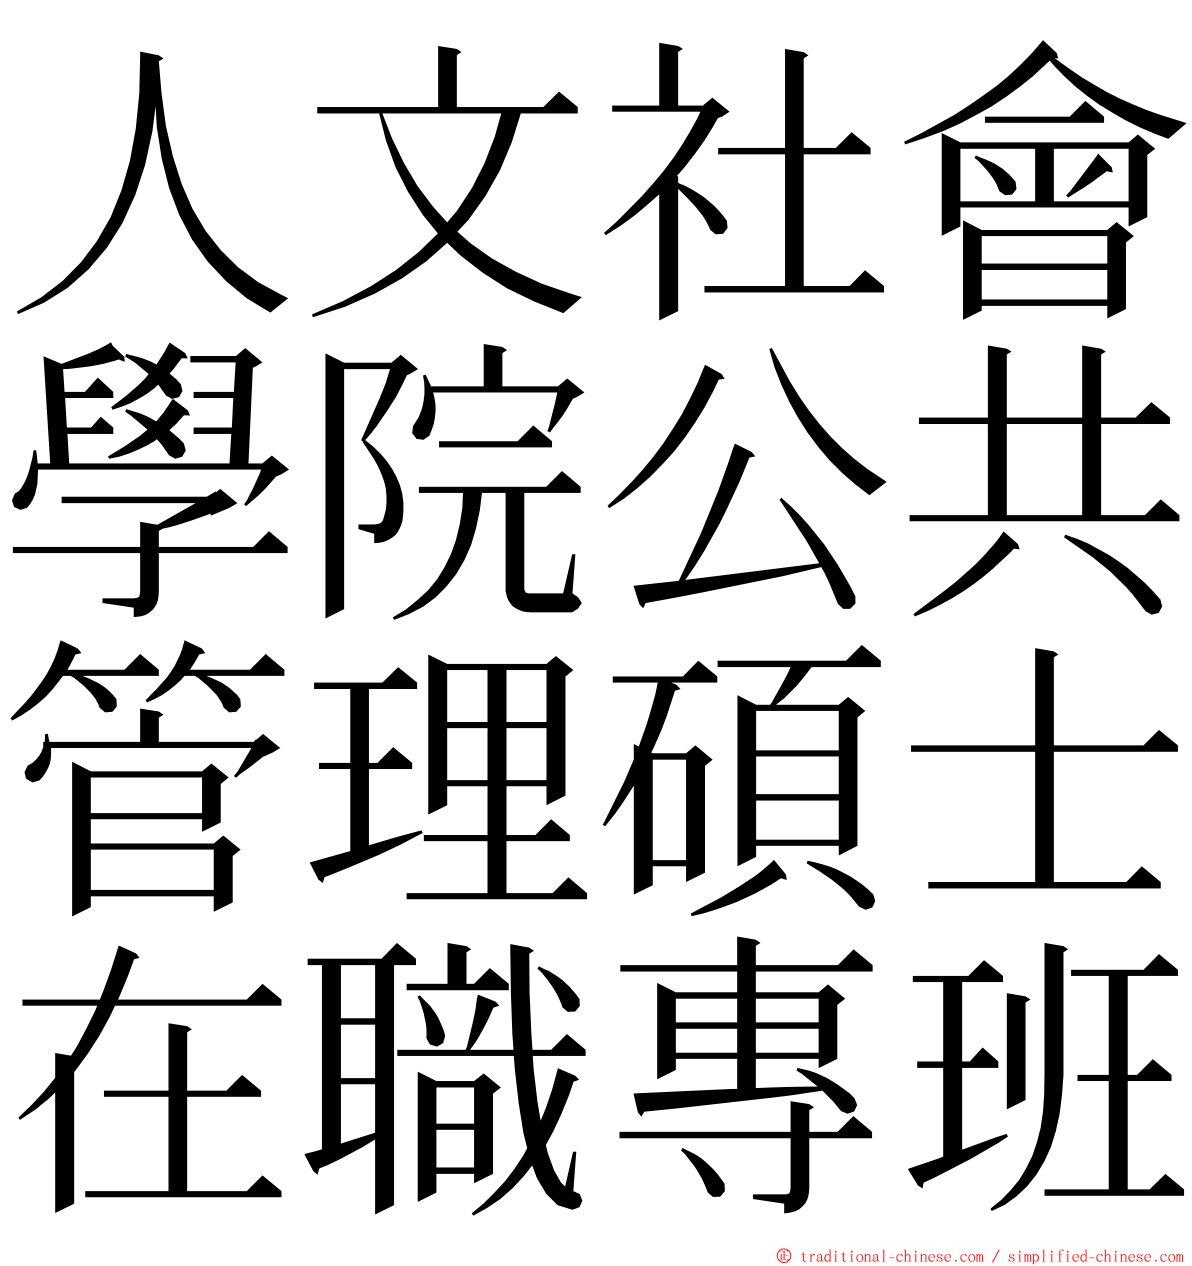 人文社會學院公共管理碩士在職專班 ming font